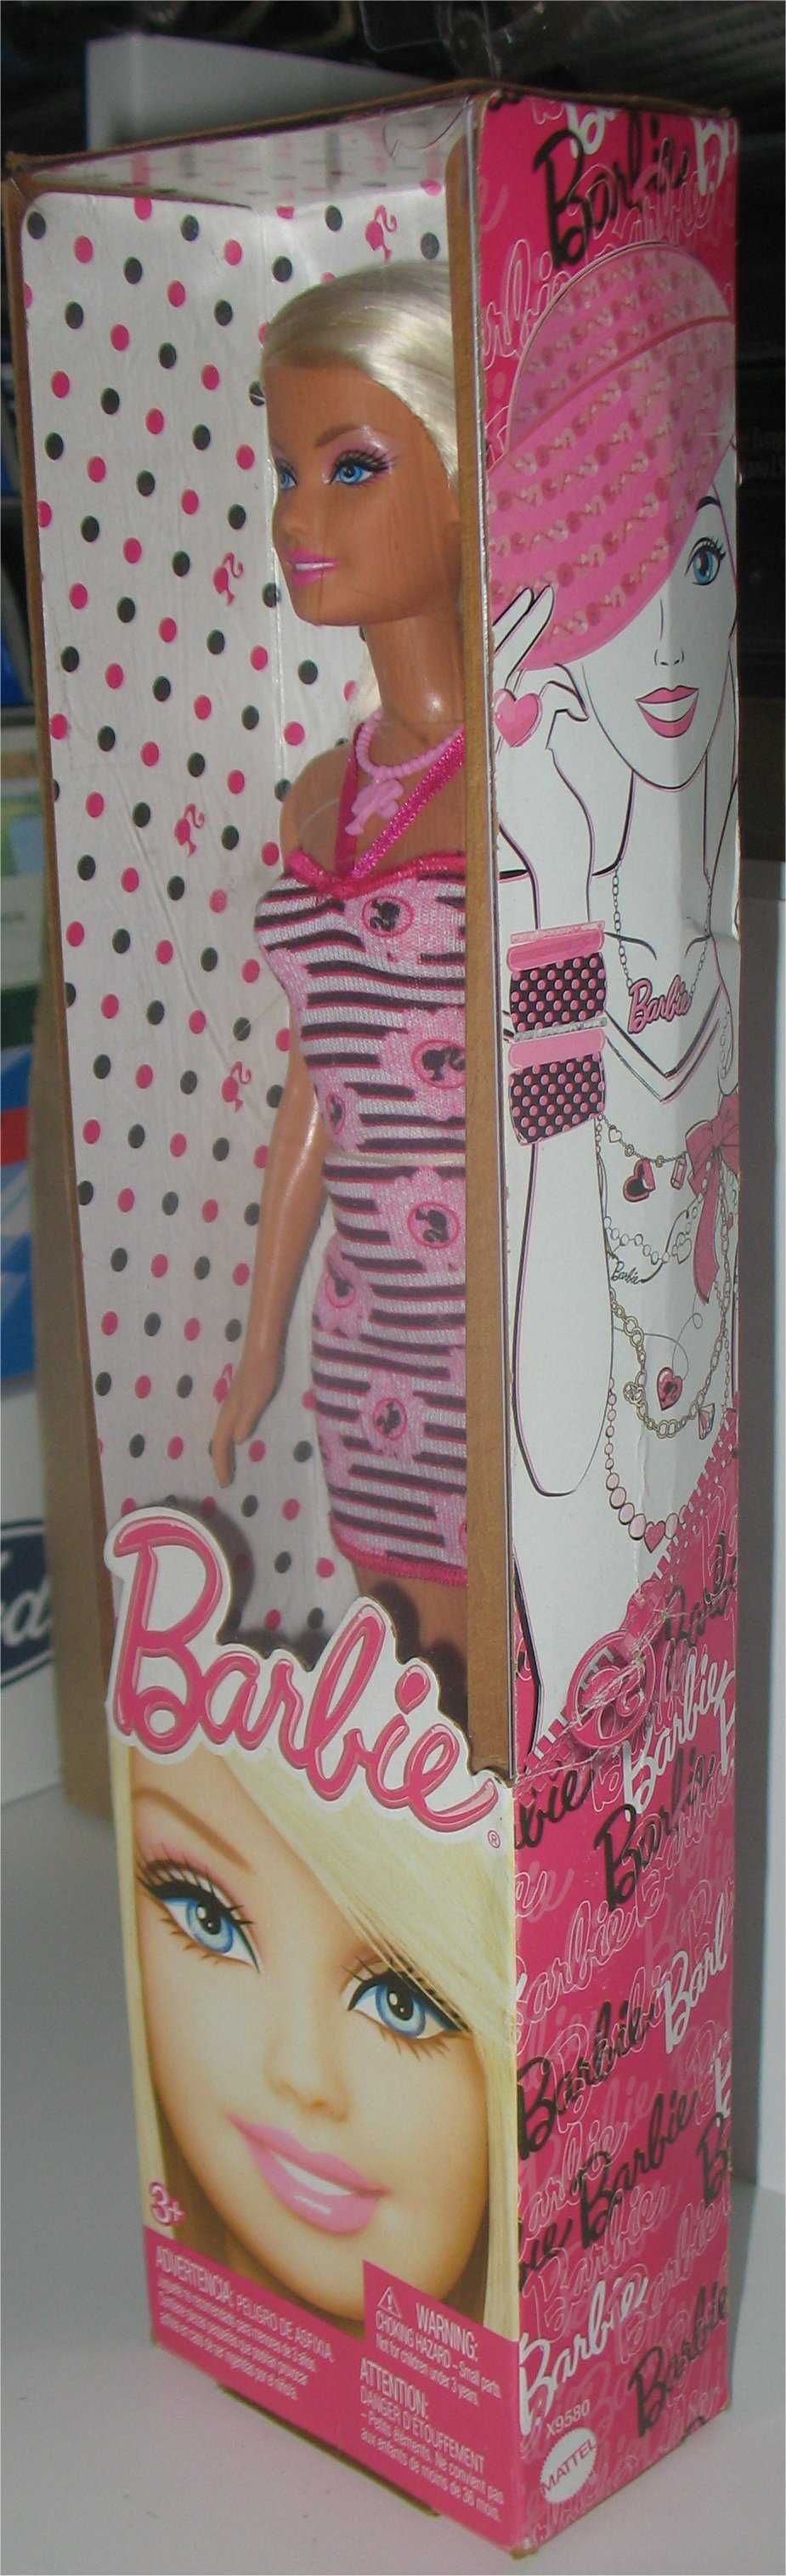 Barbie - X 9 5 8 0 (2 0 1 2)